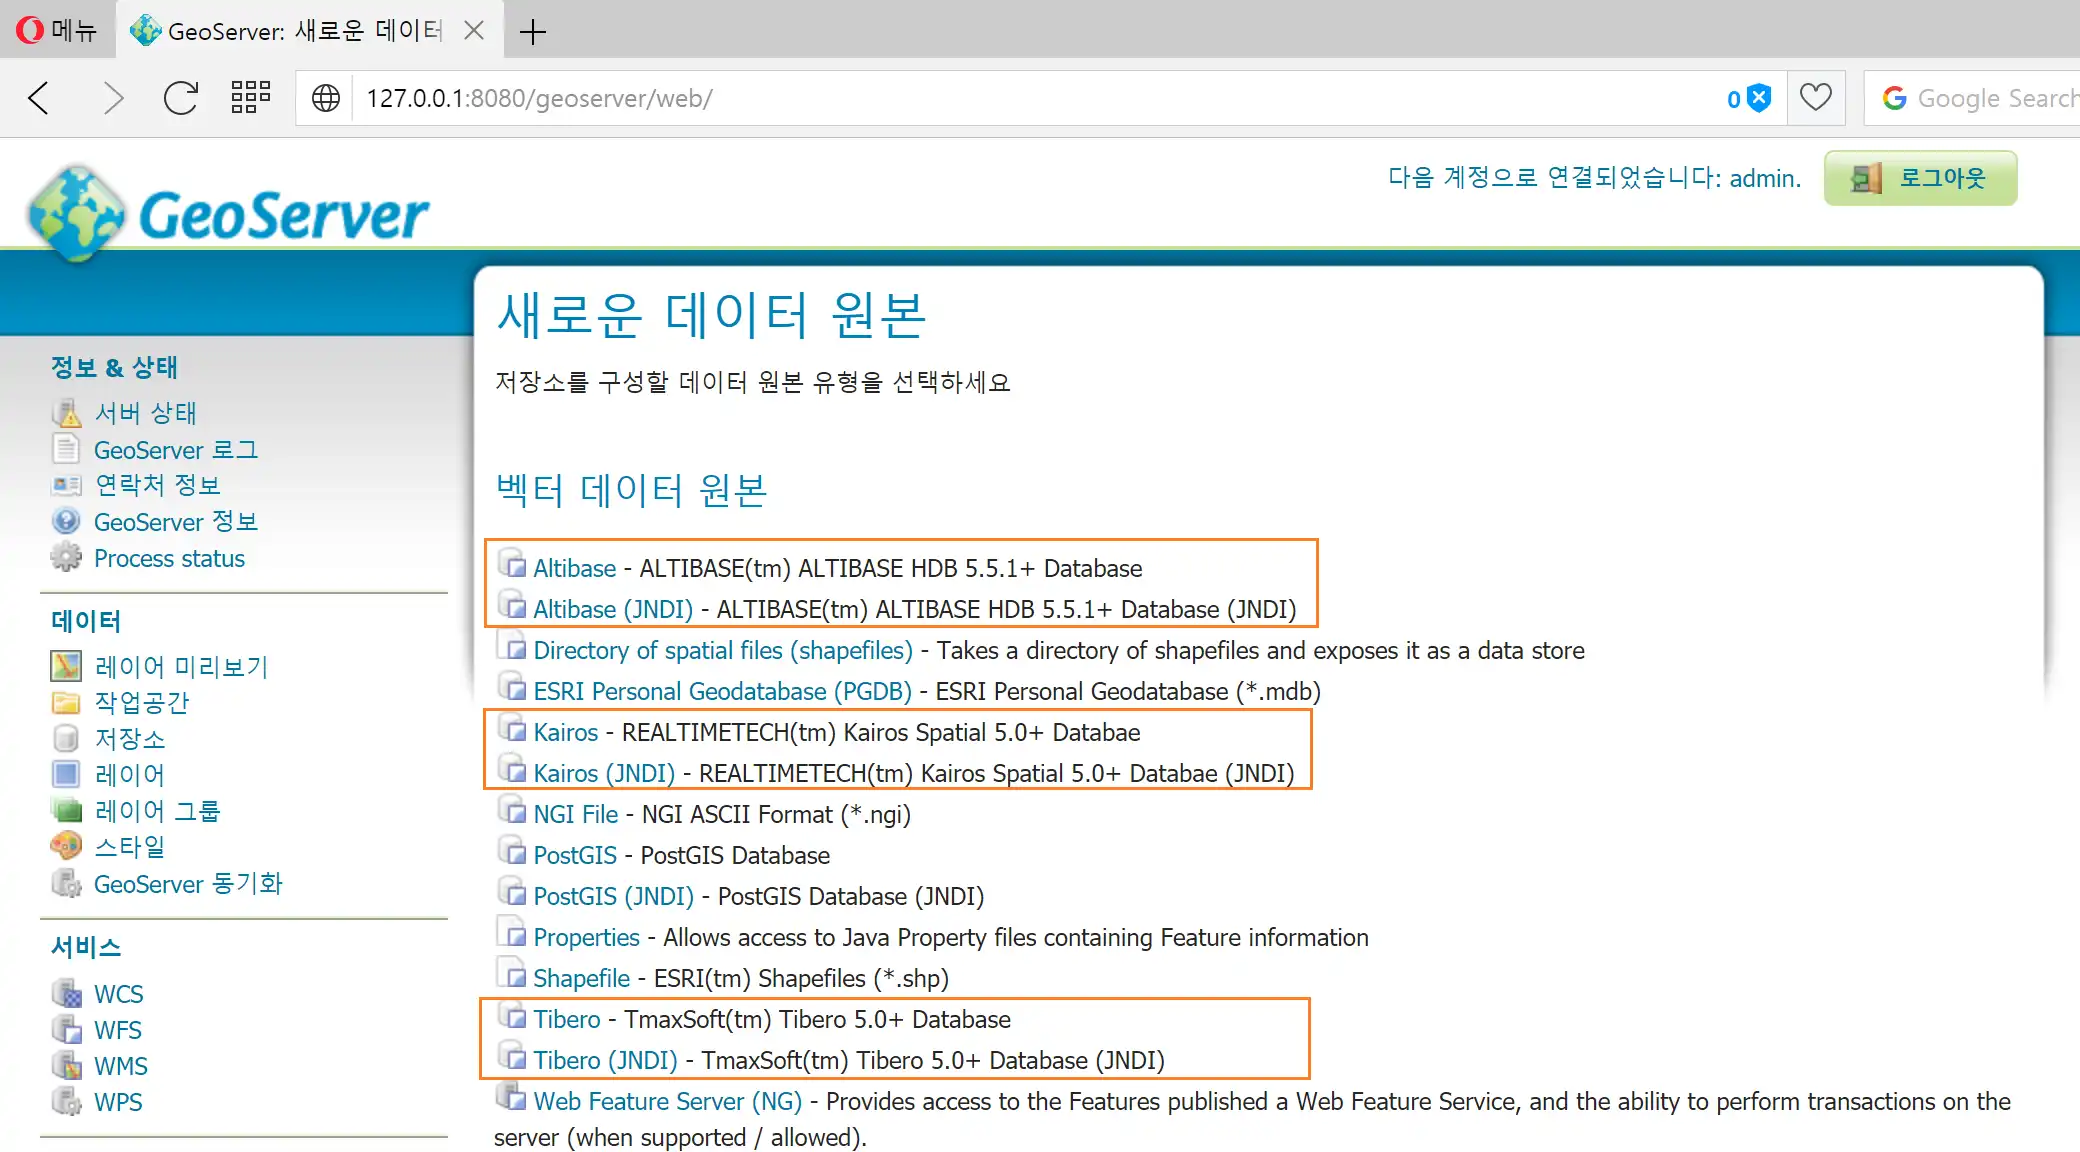 Download web tool or web app gt-jdbc-korean to run in Linux online